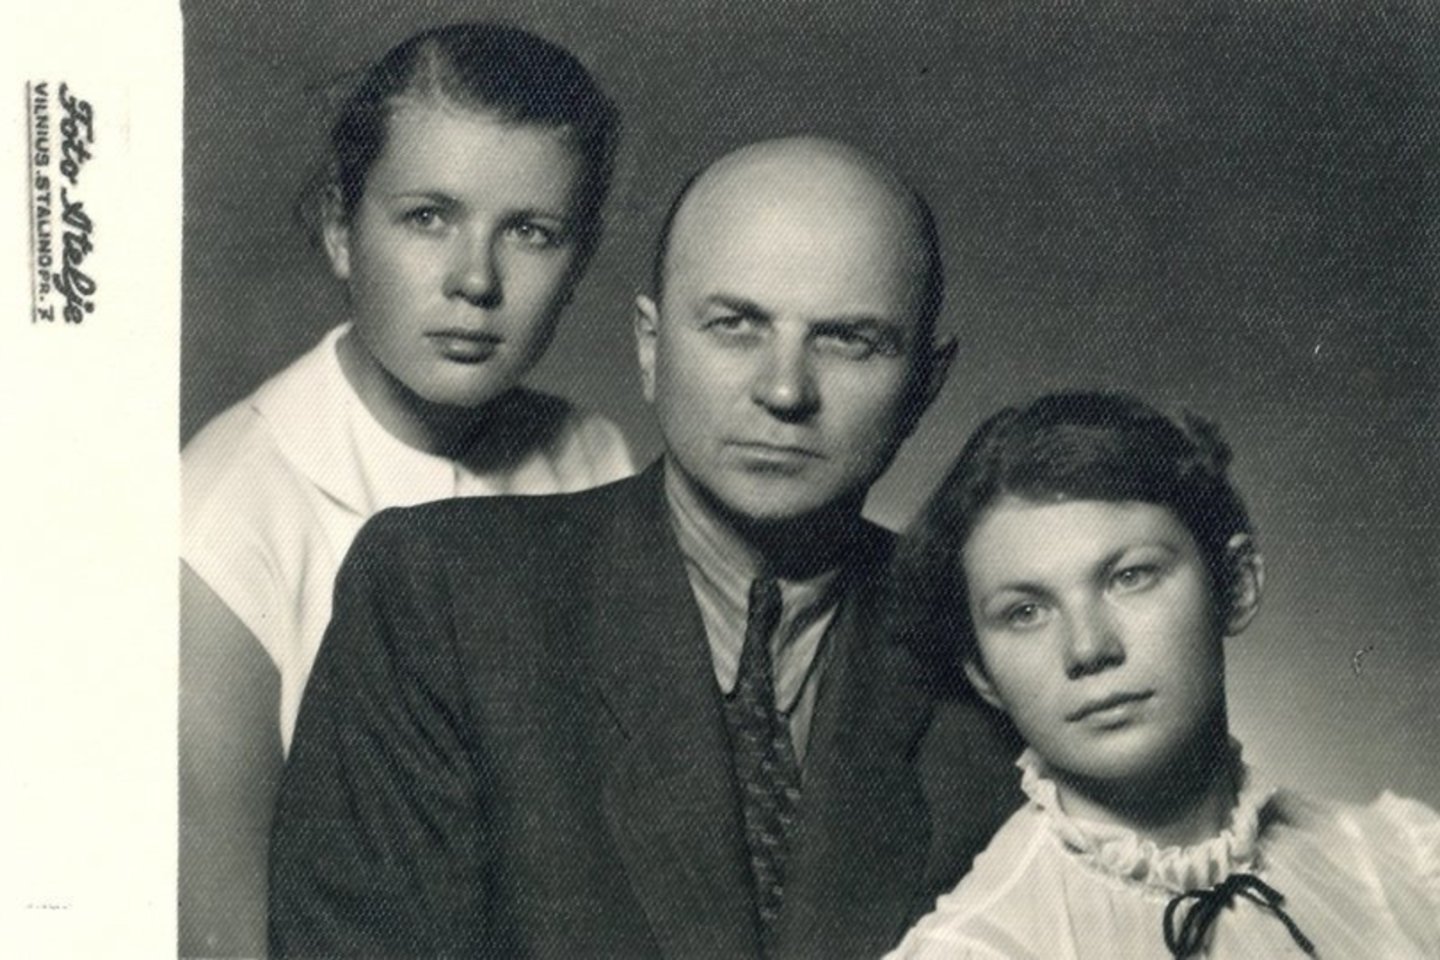  Juozas Baltušis su dukterimis Violeta Juozėnaite (kairėje) ir Rita Baltušyte Vilniuje. 1959 m.  <br> LLMA nuotr.